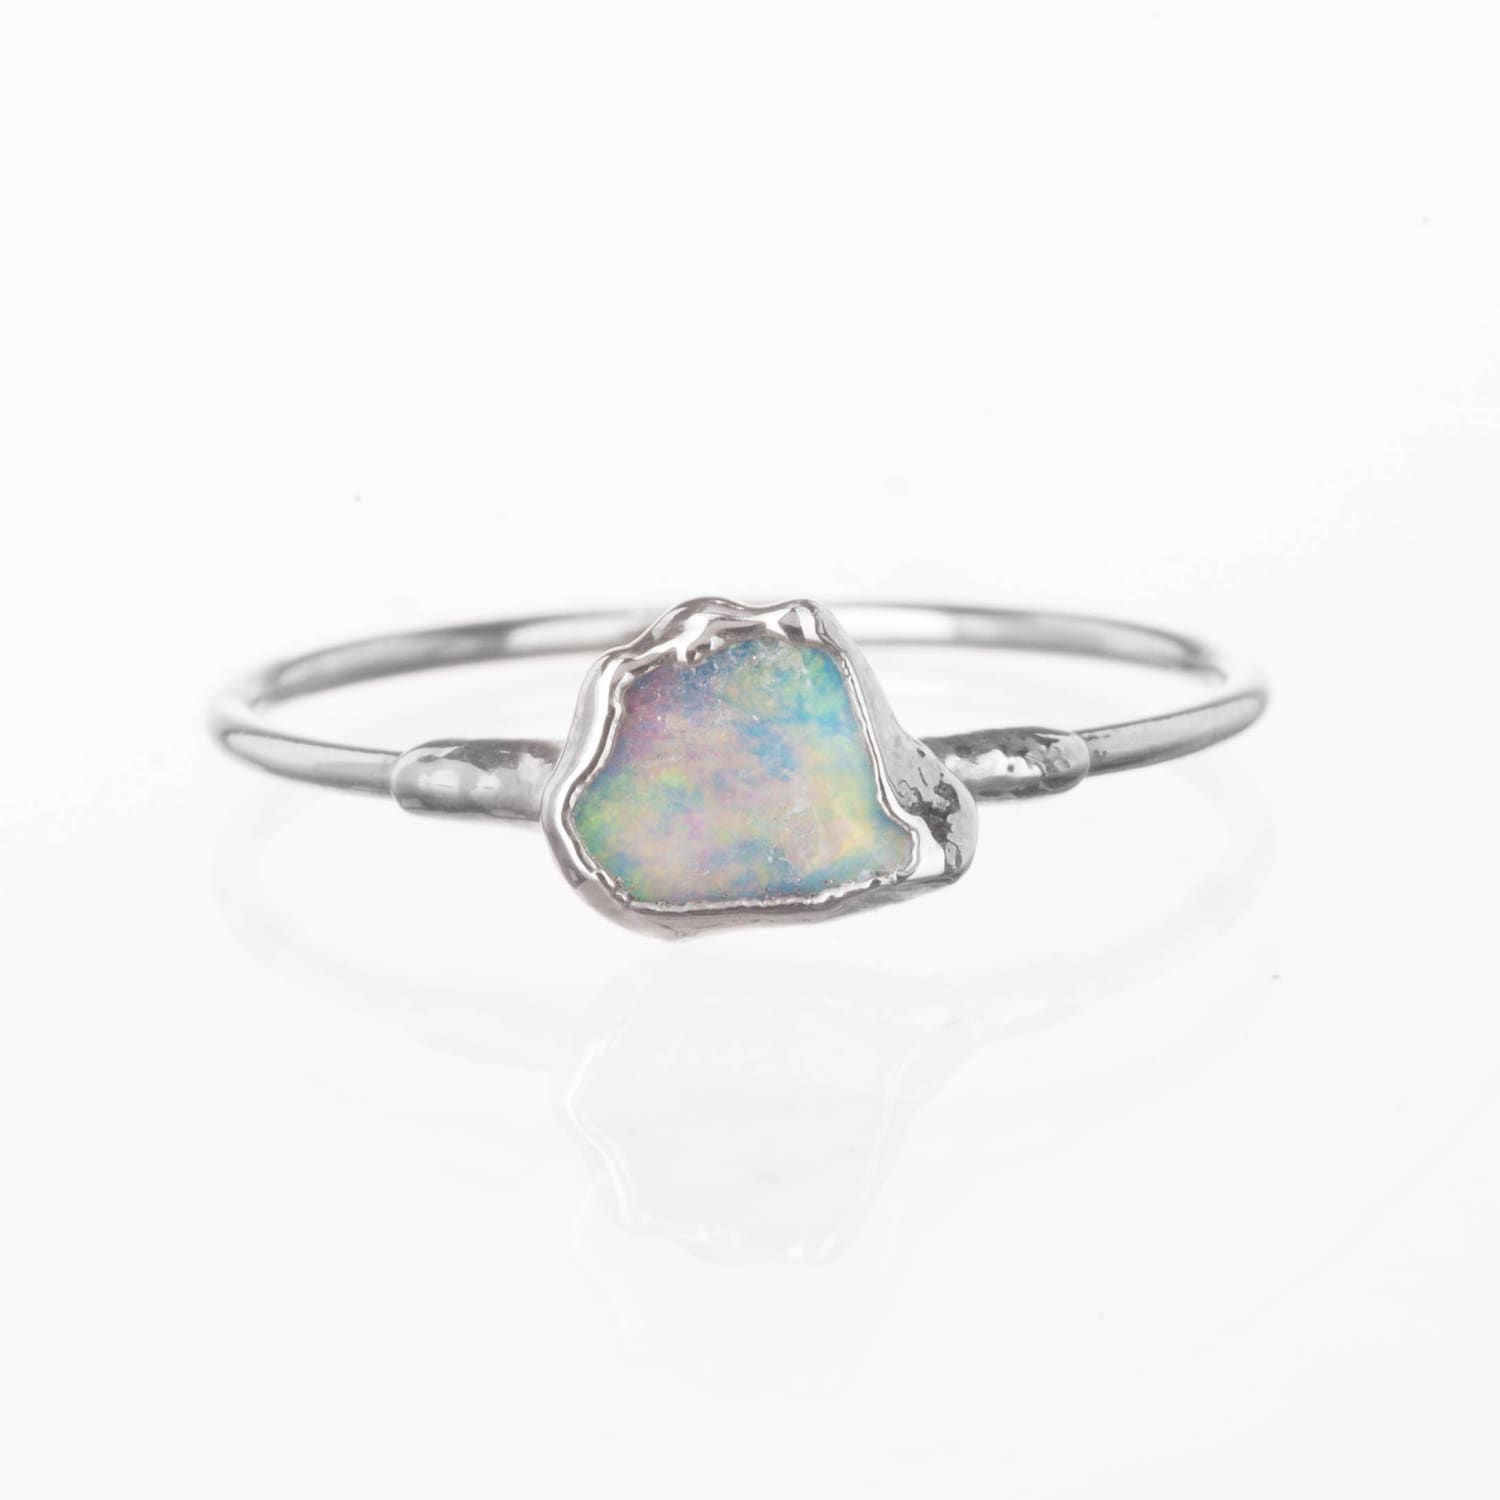 Mini Raw Australian Opal Ring in Sterling Silver Gemstone